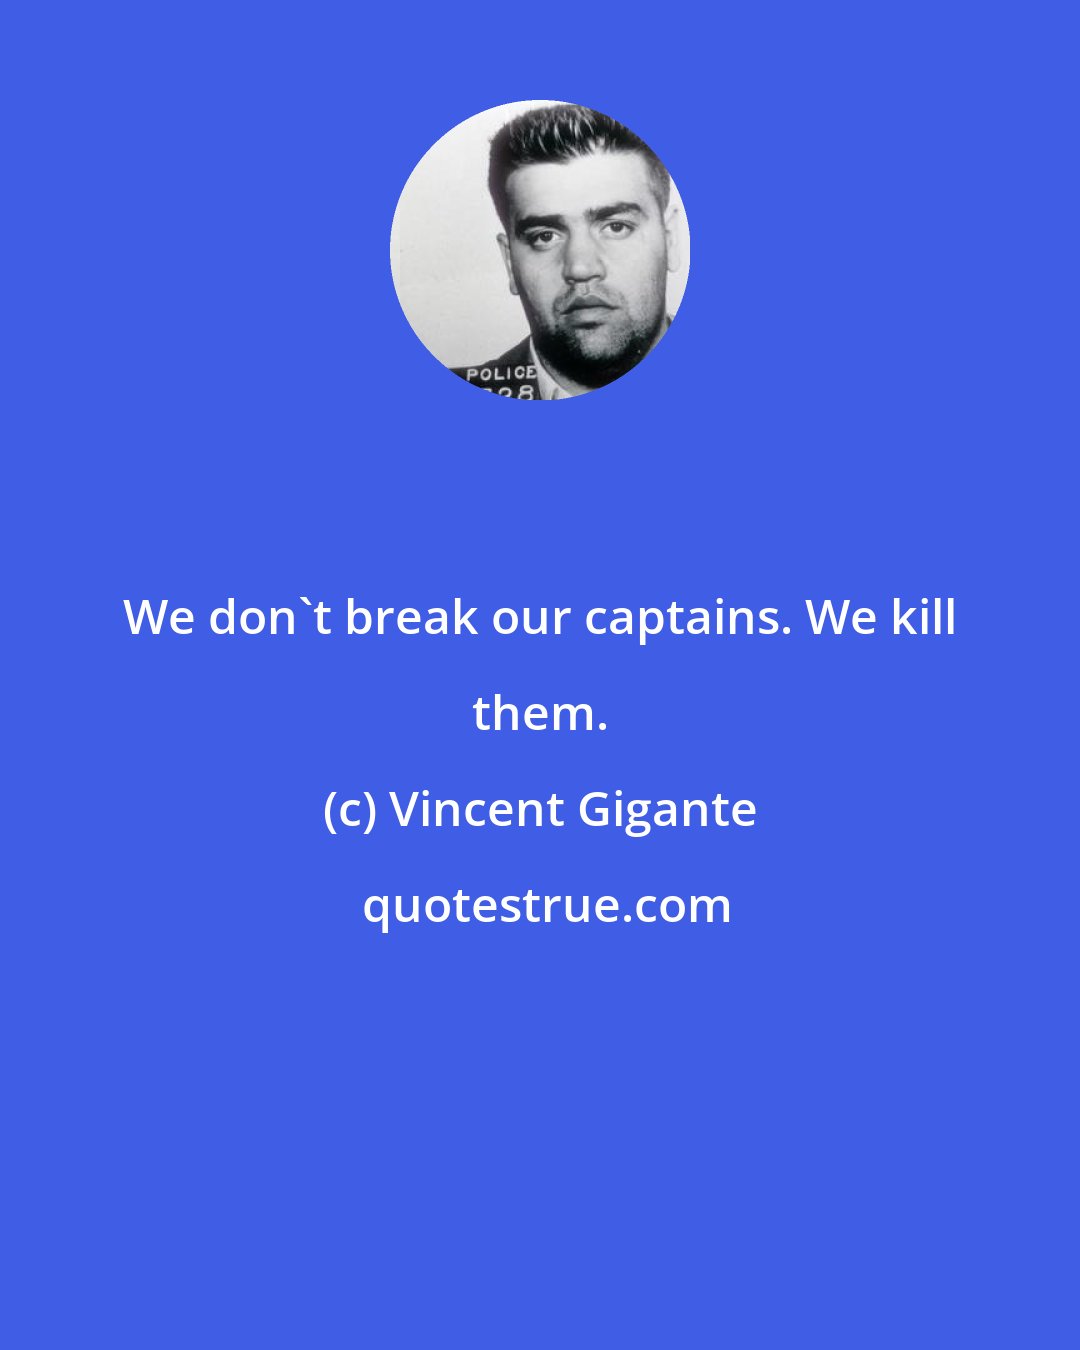 Vincent Gigante: We don't break our captains. We kill them.